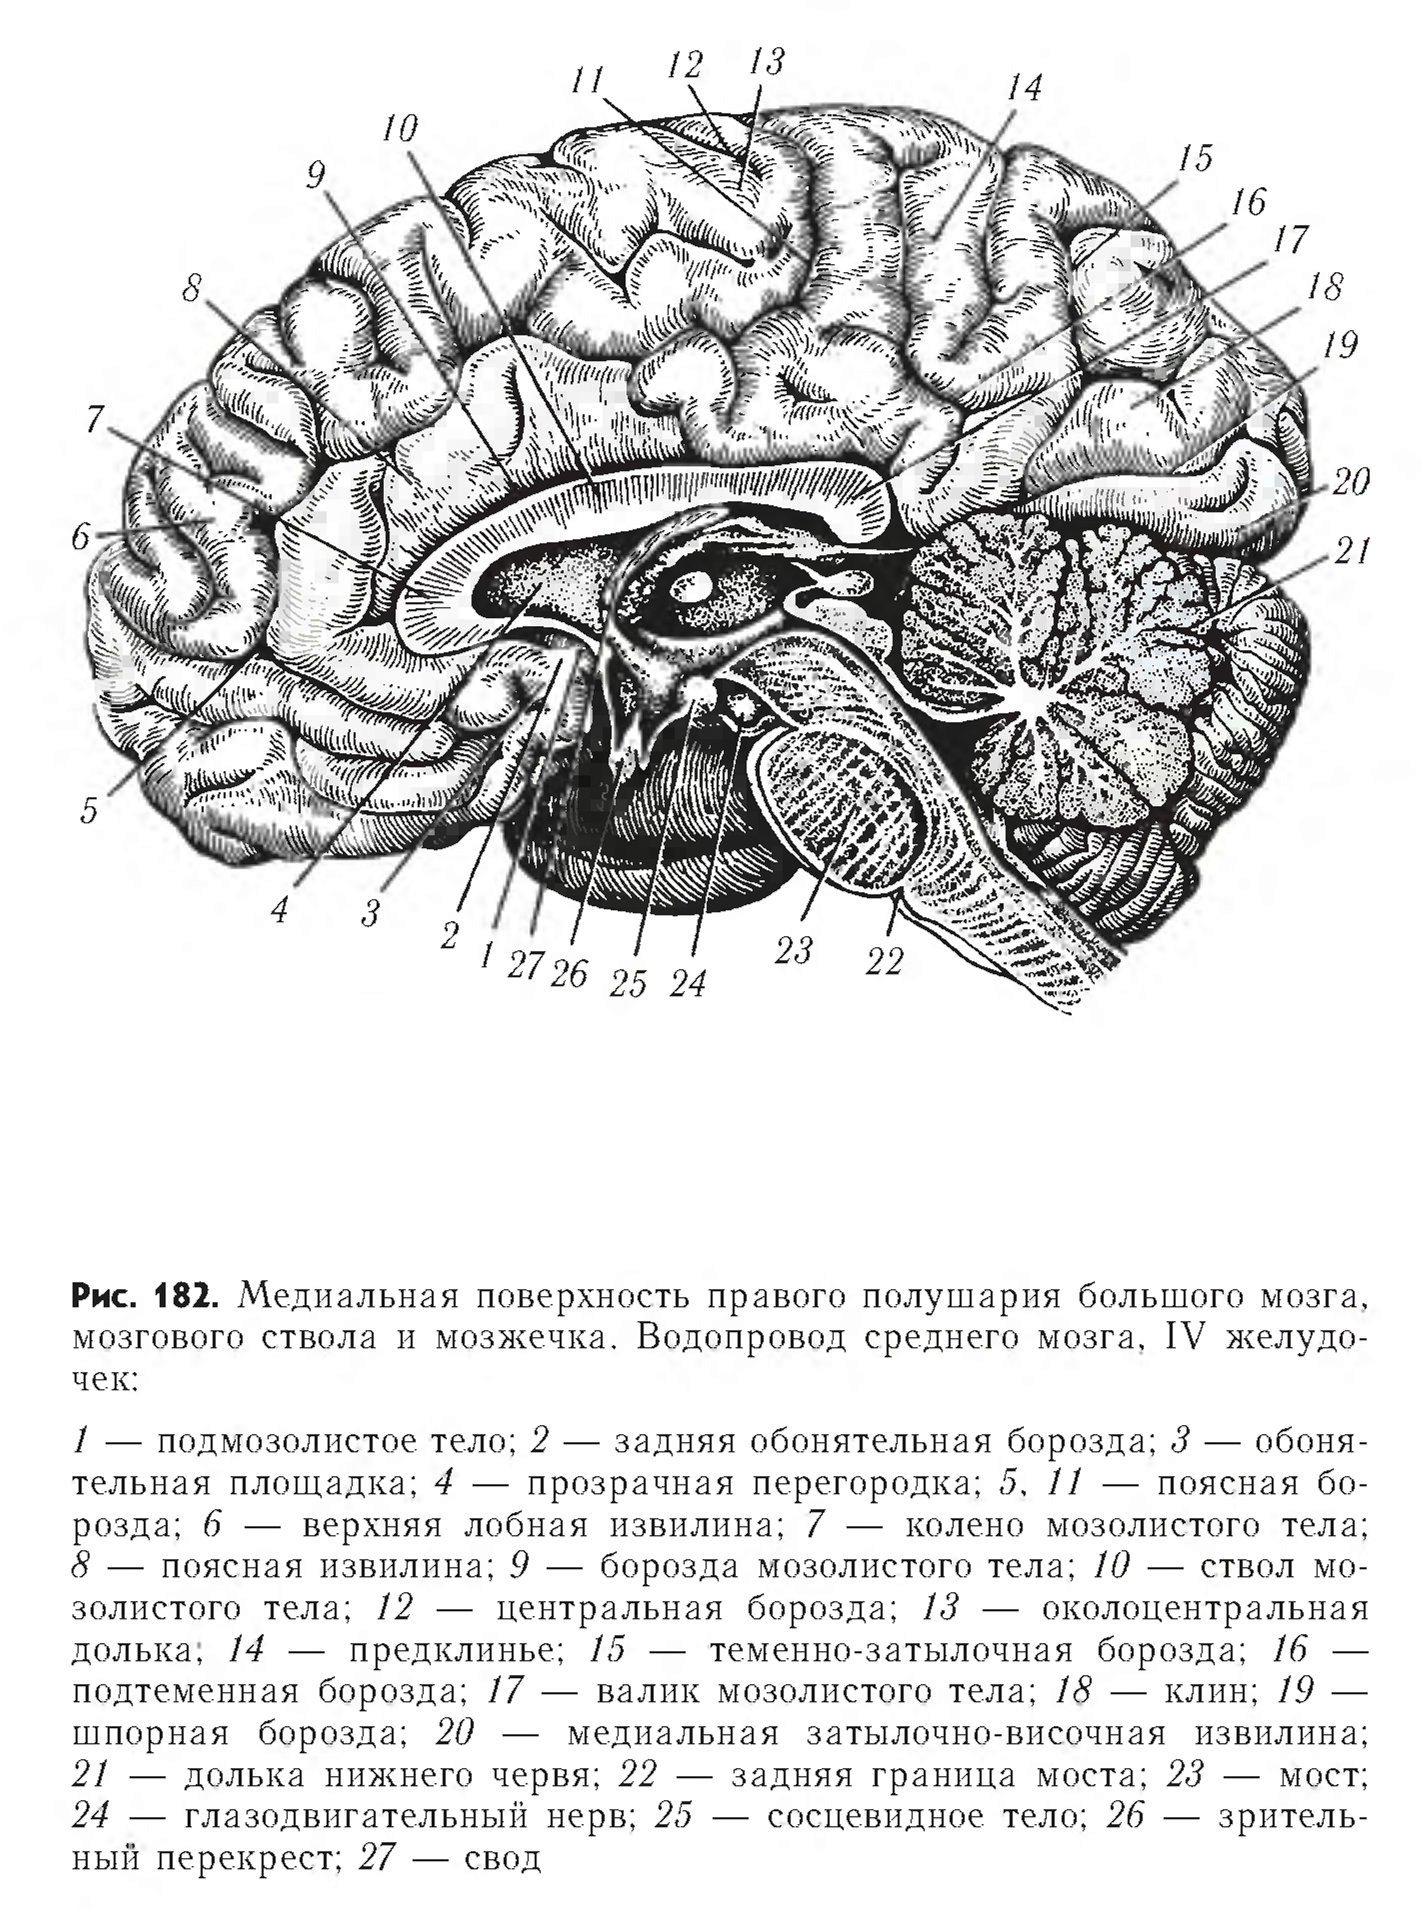 Поверхность головного мозга имеет. Медиальная поверхность мозга. Медиальная поверхность головного мозга анатомия. Медиальная поверхность головного мозга рисунок. Медиальный разрез головного мозга.